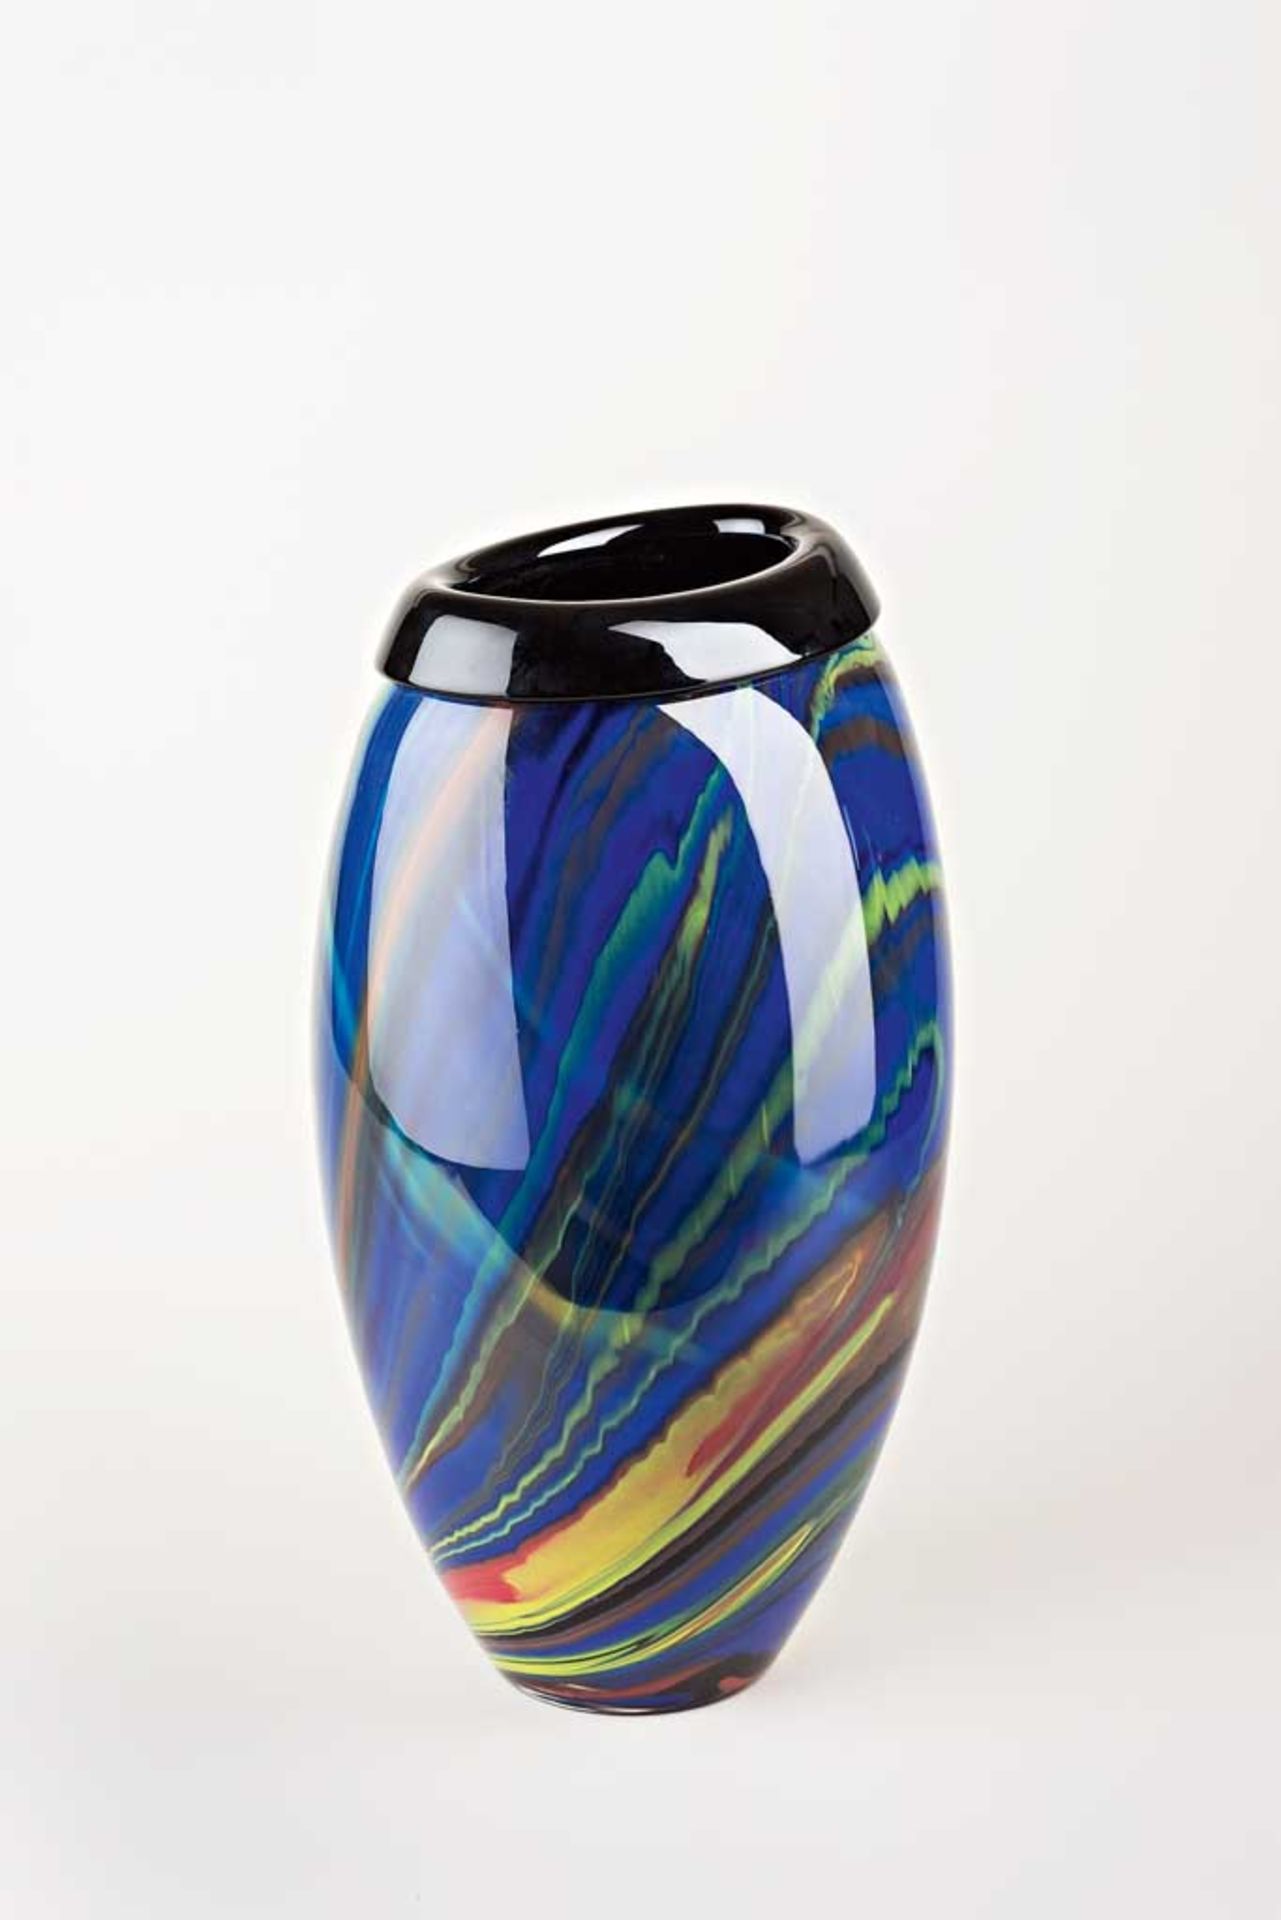 Große ovoide Vase. Hyalithglas mit farbigen Aufschmelzungen. Verdickter Rand. Arte Vetro Murano